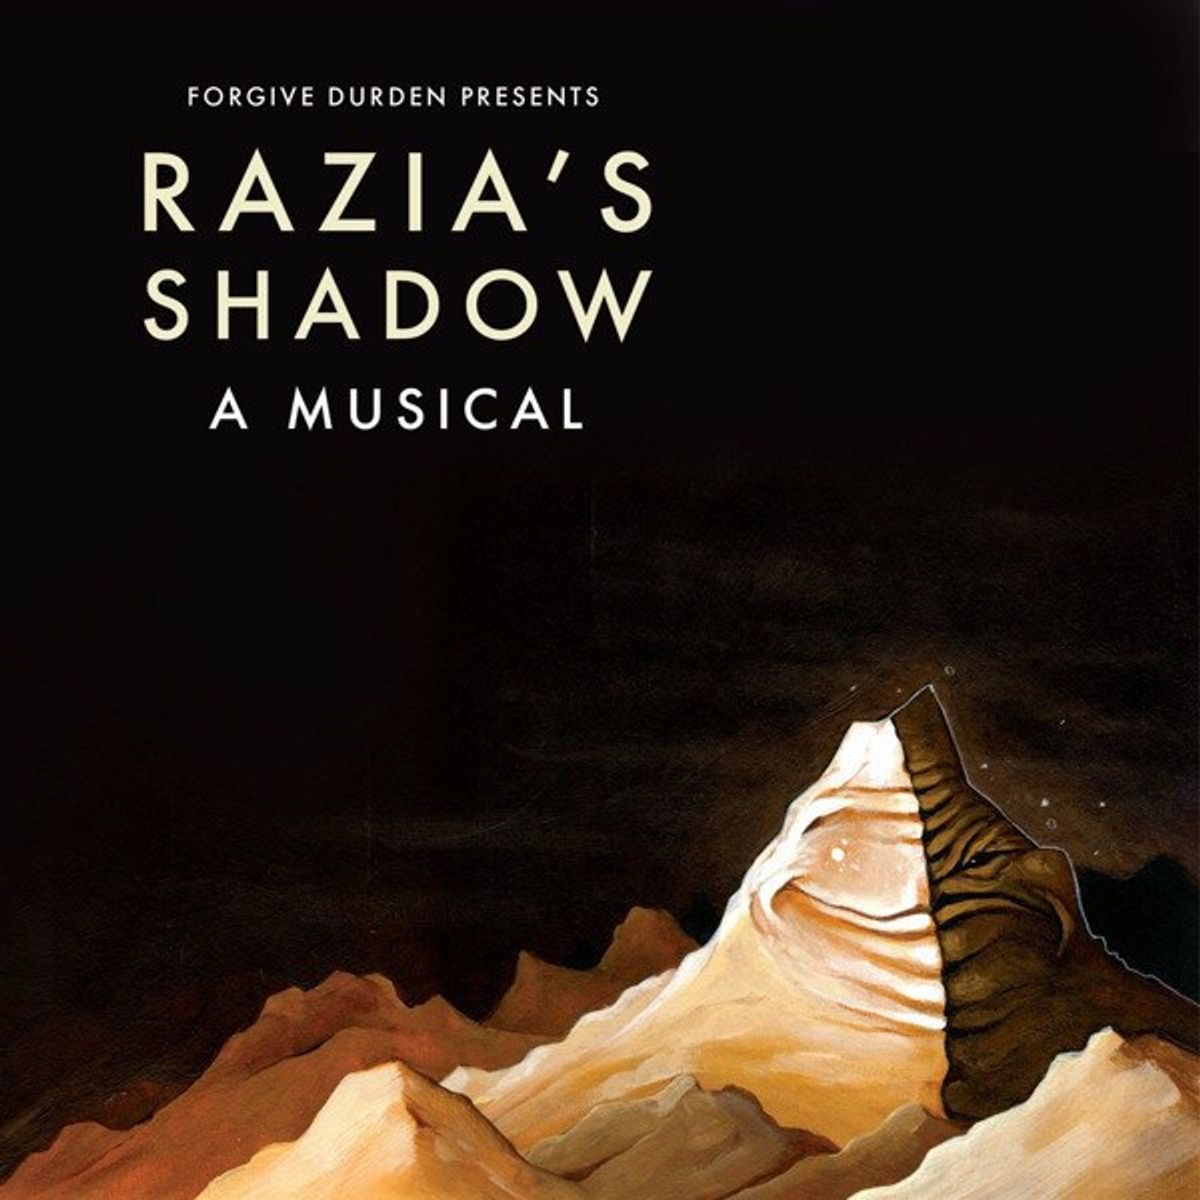 "Razia's Shadow": A Musical